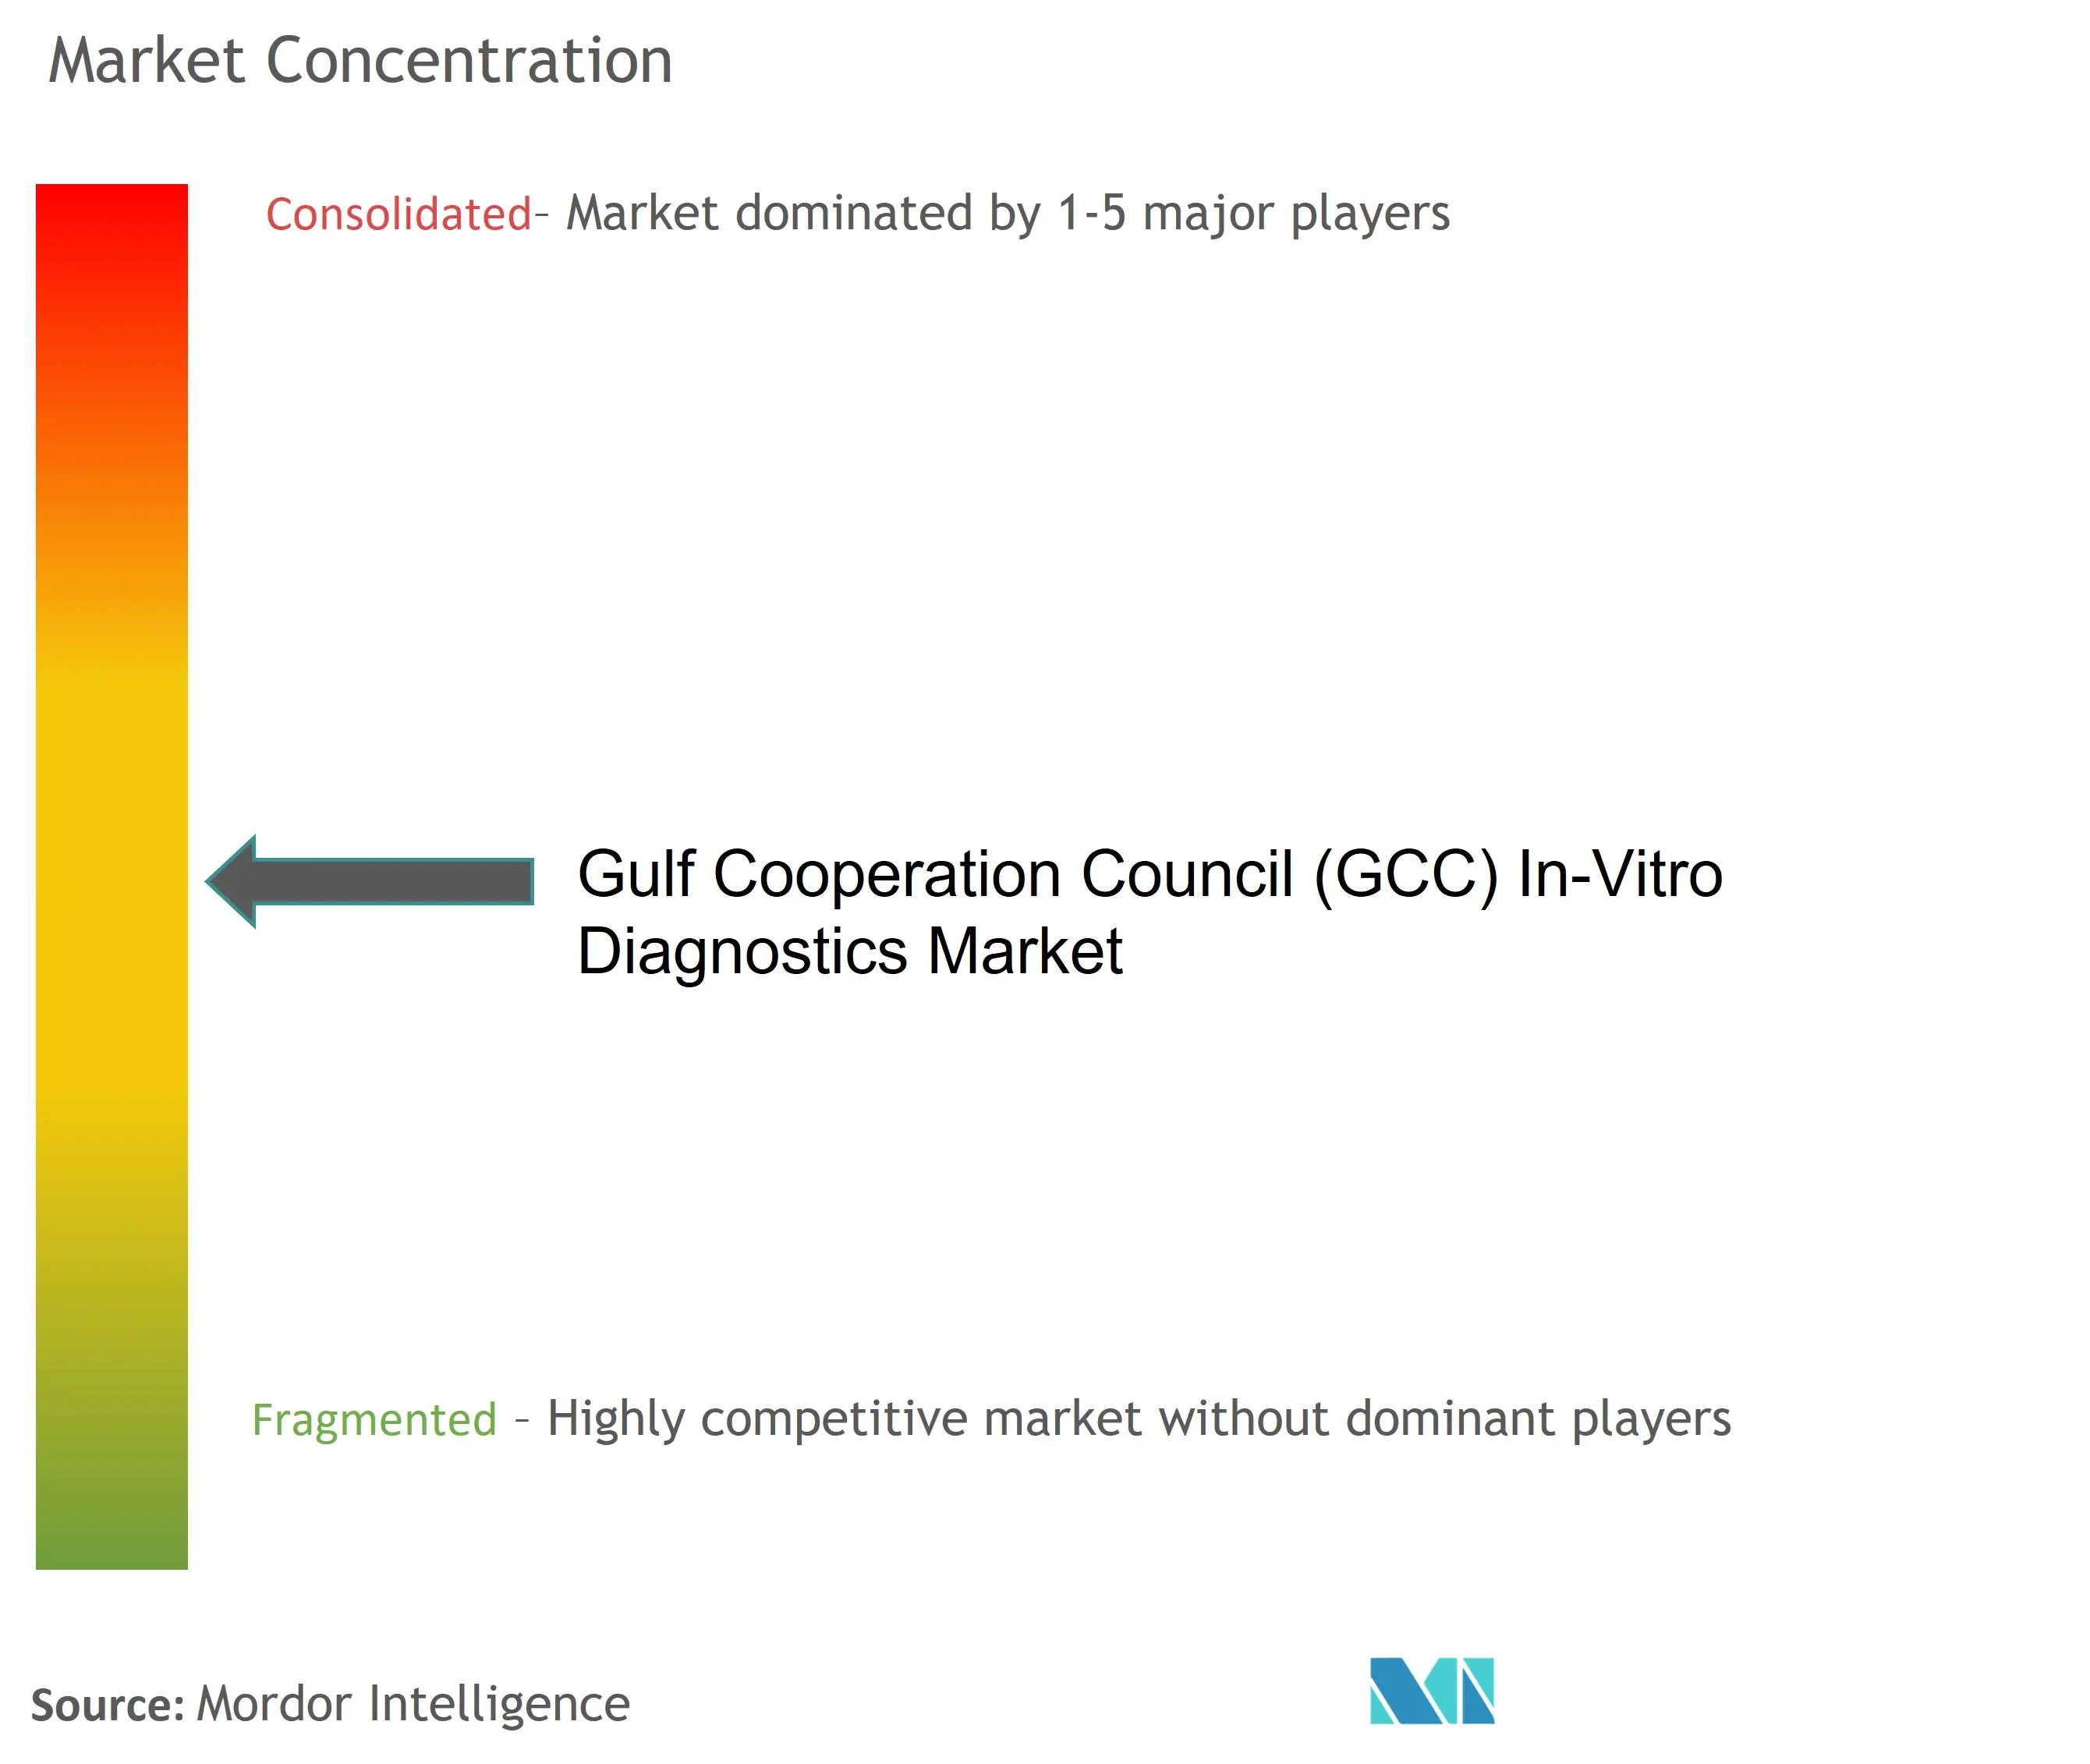 GCC In-Vitro Diagnostics Market Major Players